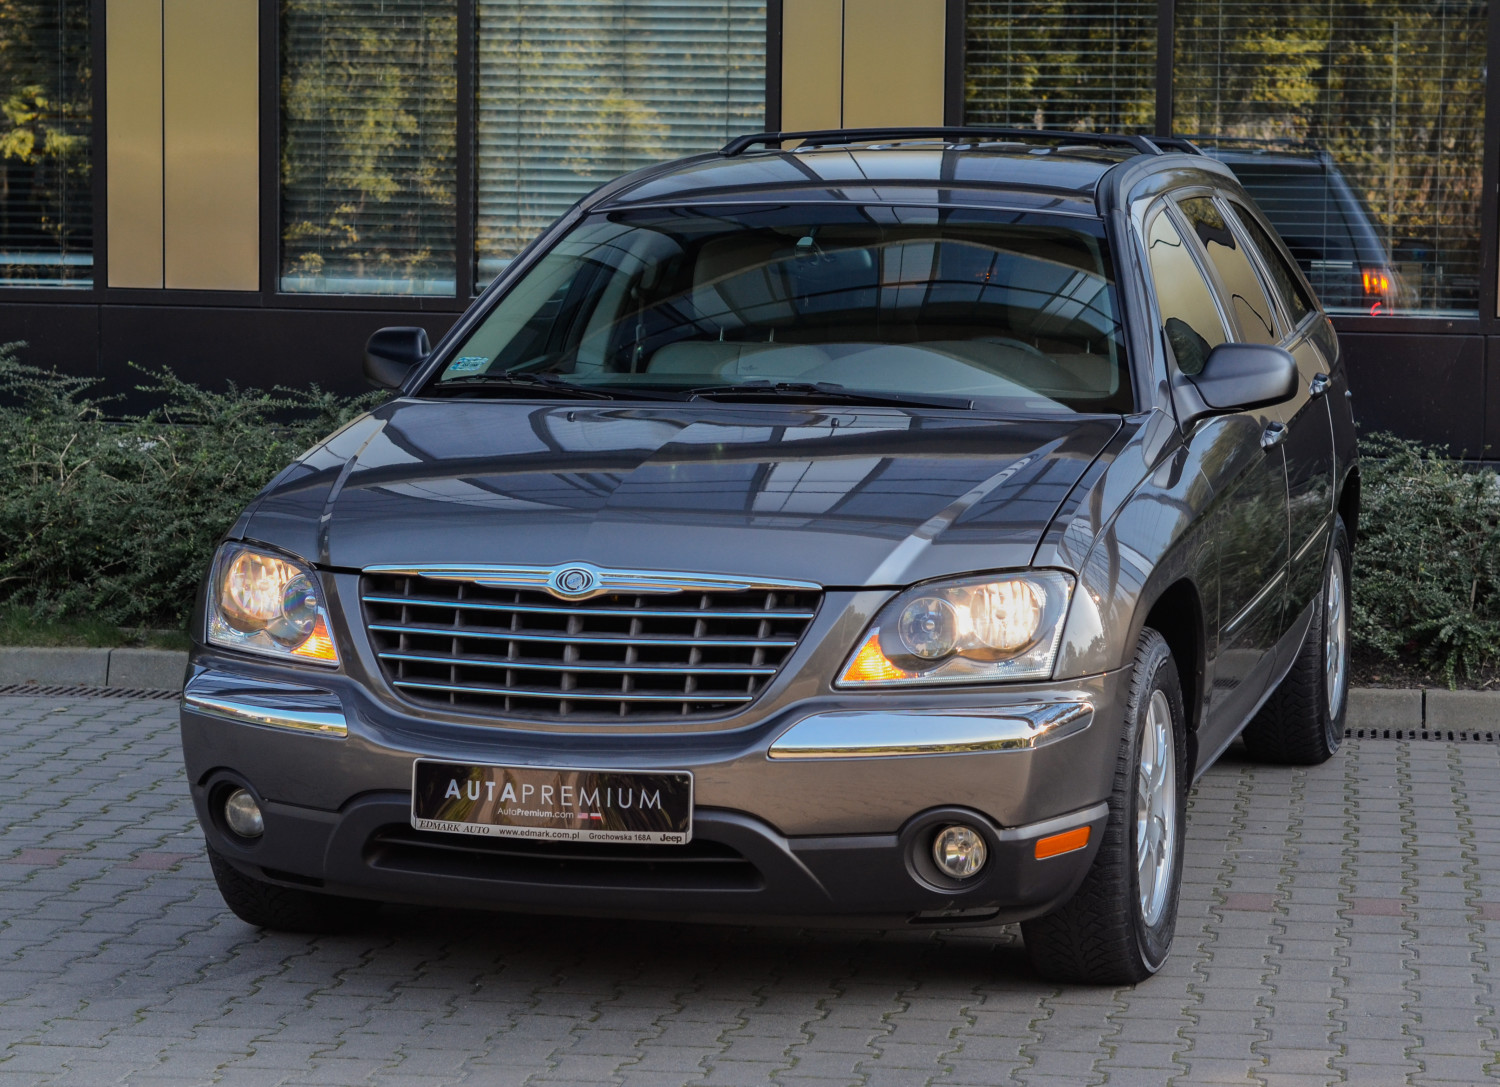 Chrysler Pacifica 3.5 V6 24V 2004 Auta Premium